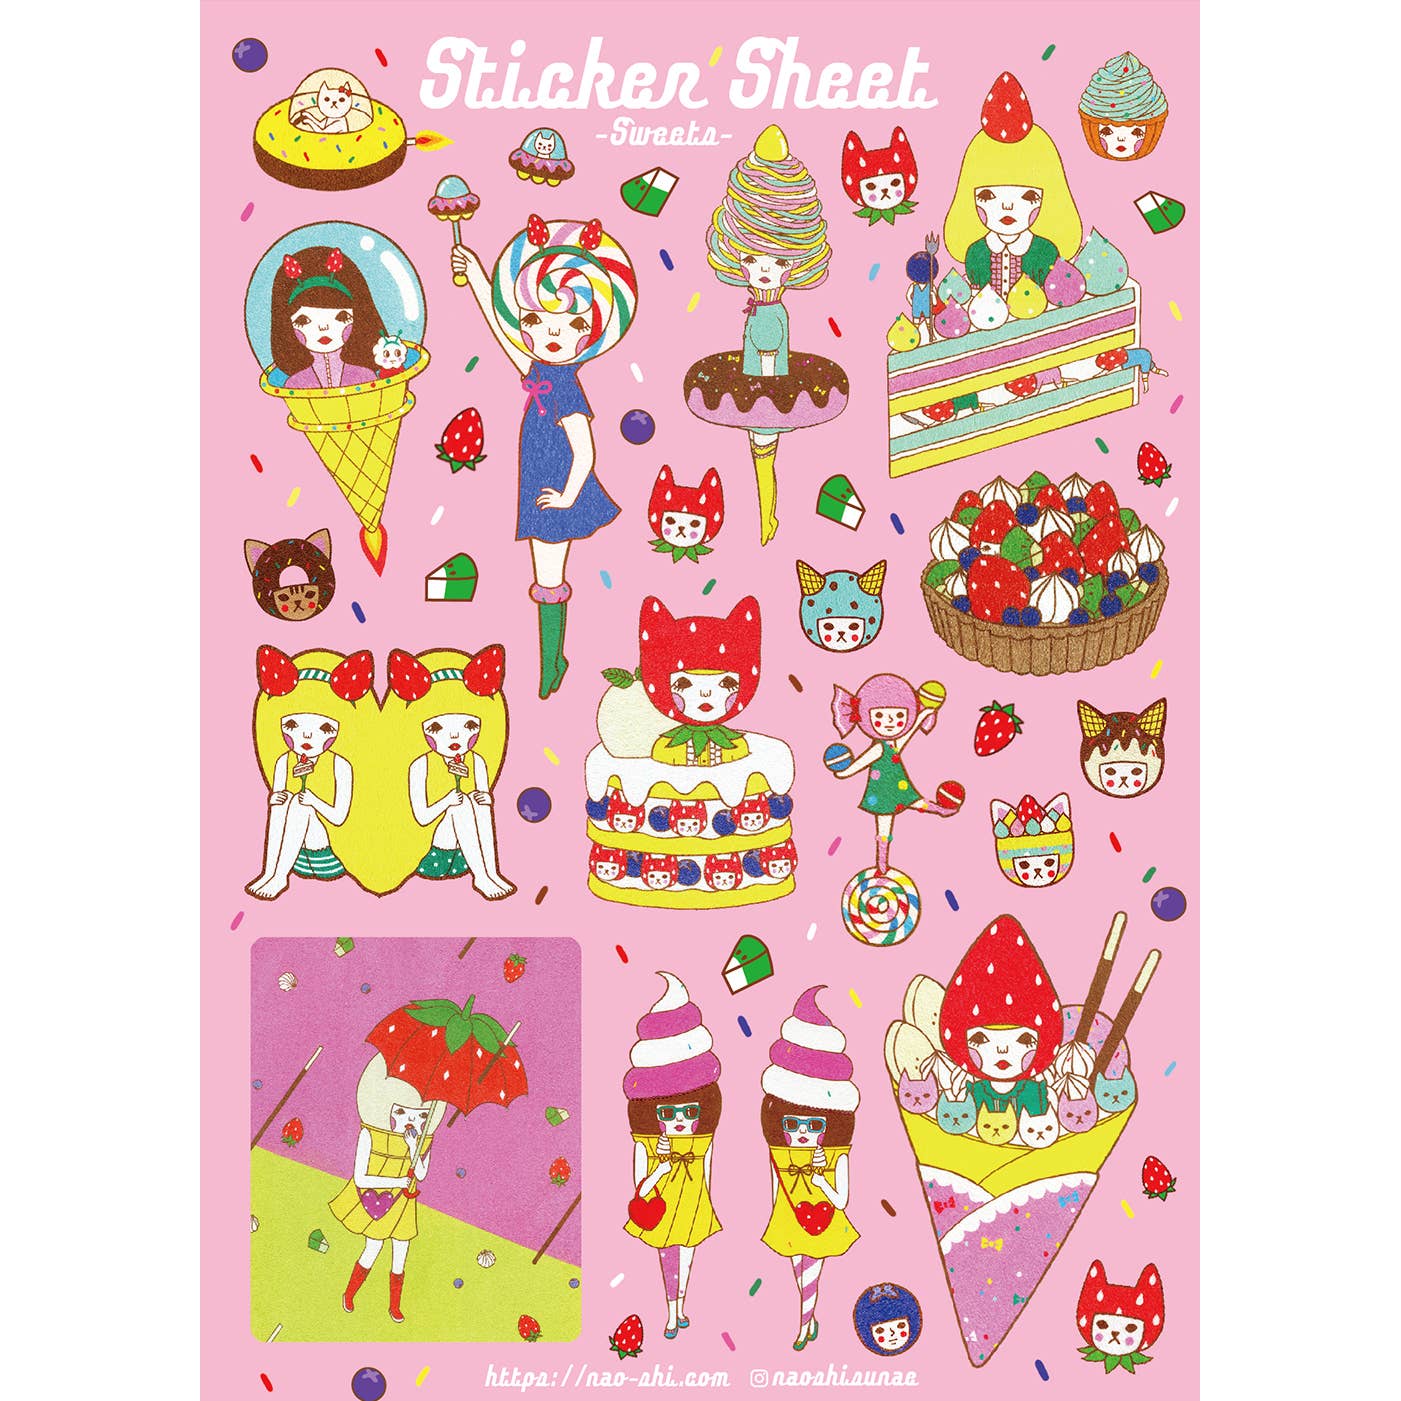 Sweets Sticker Sheet